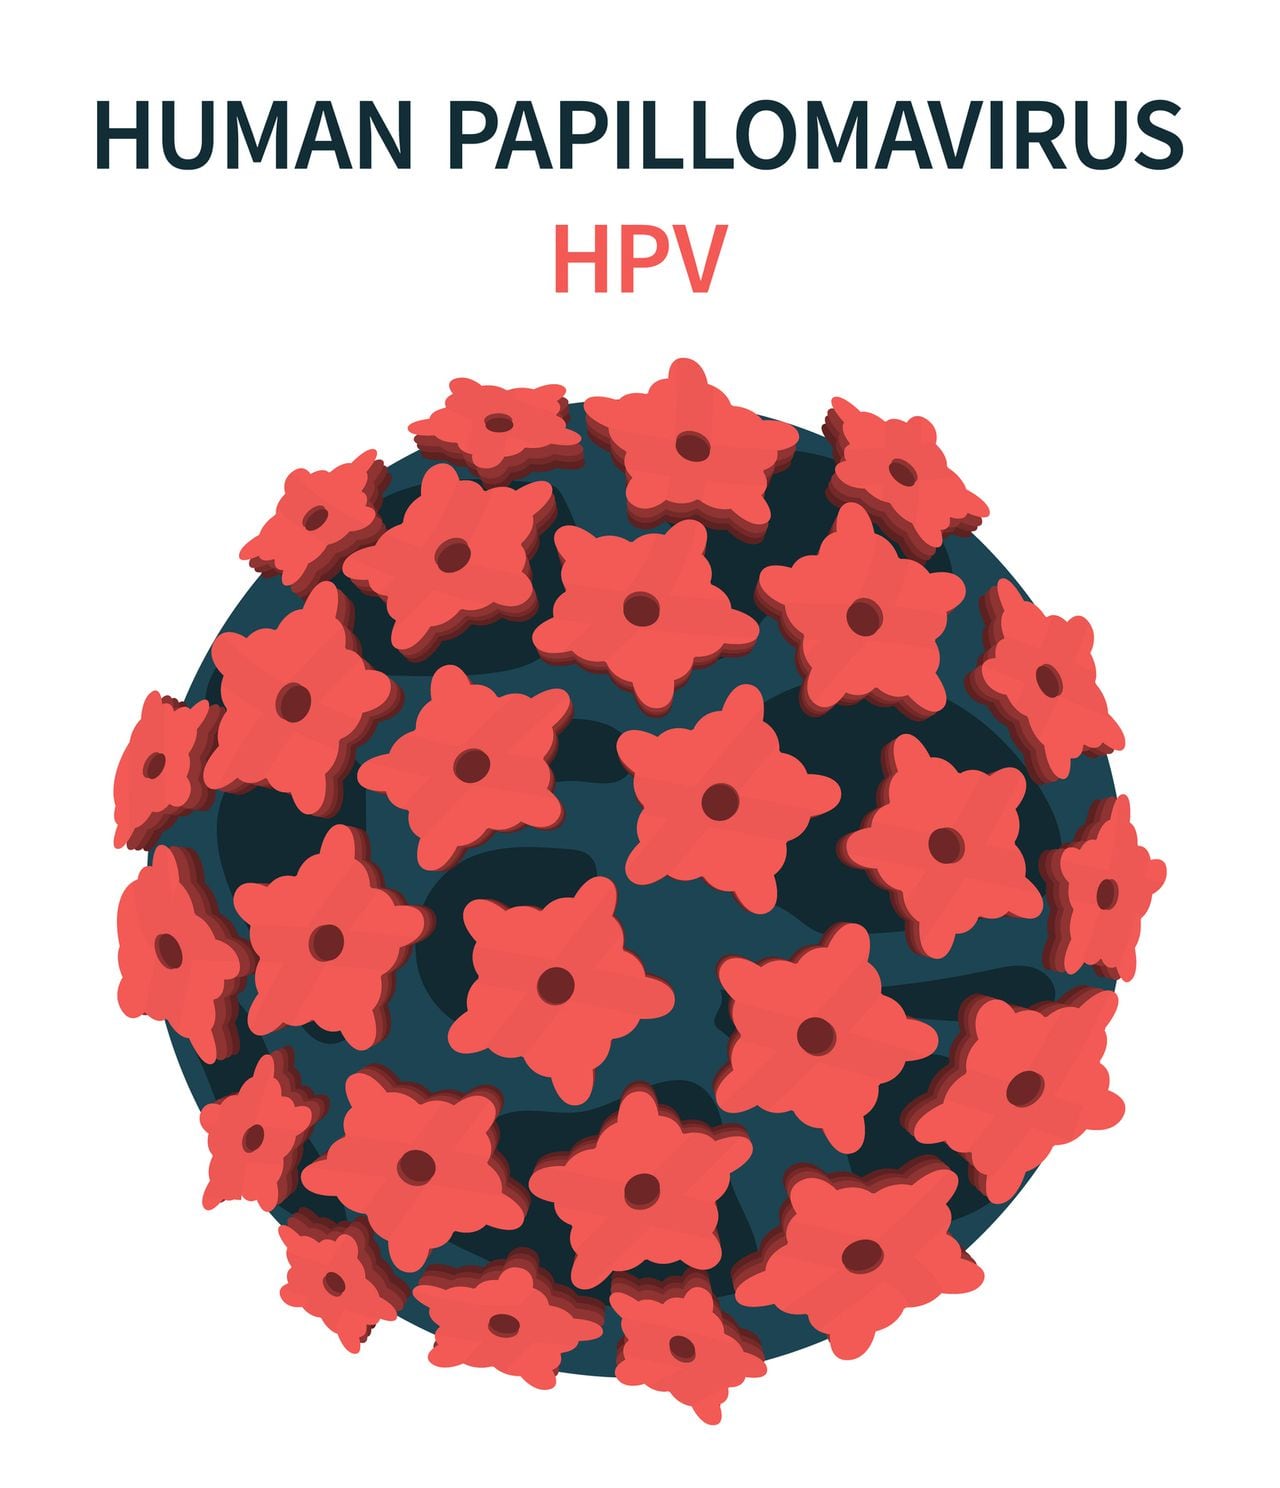 Foto de referencia sobre el virus del papiloma humano